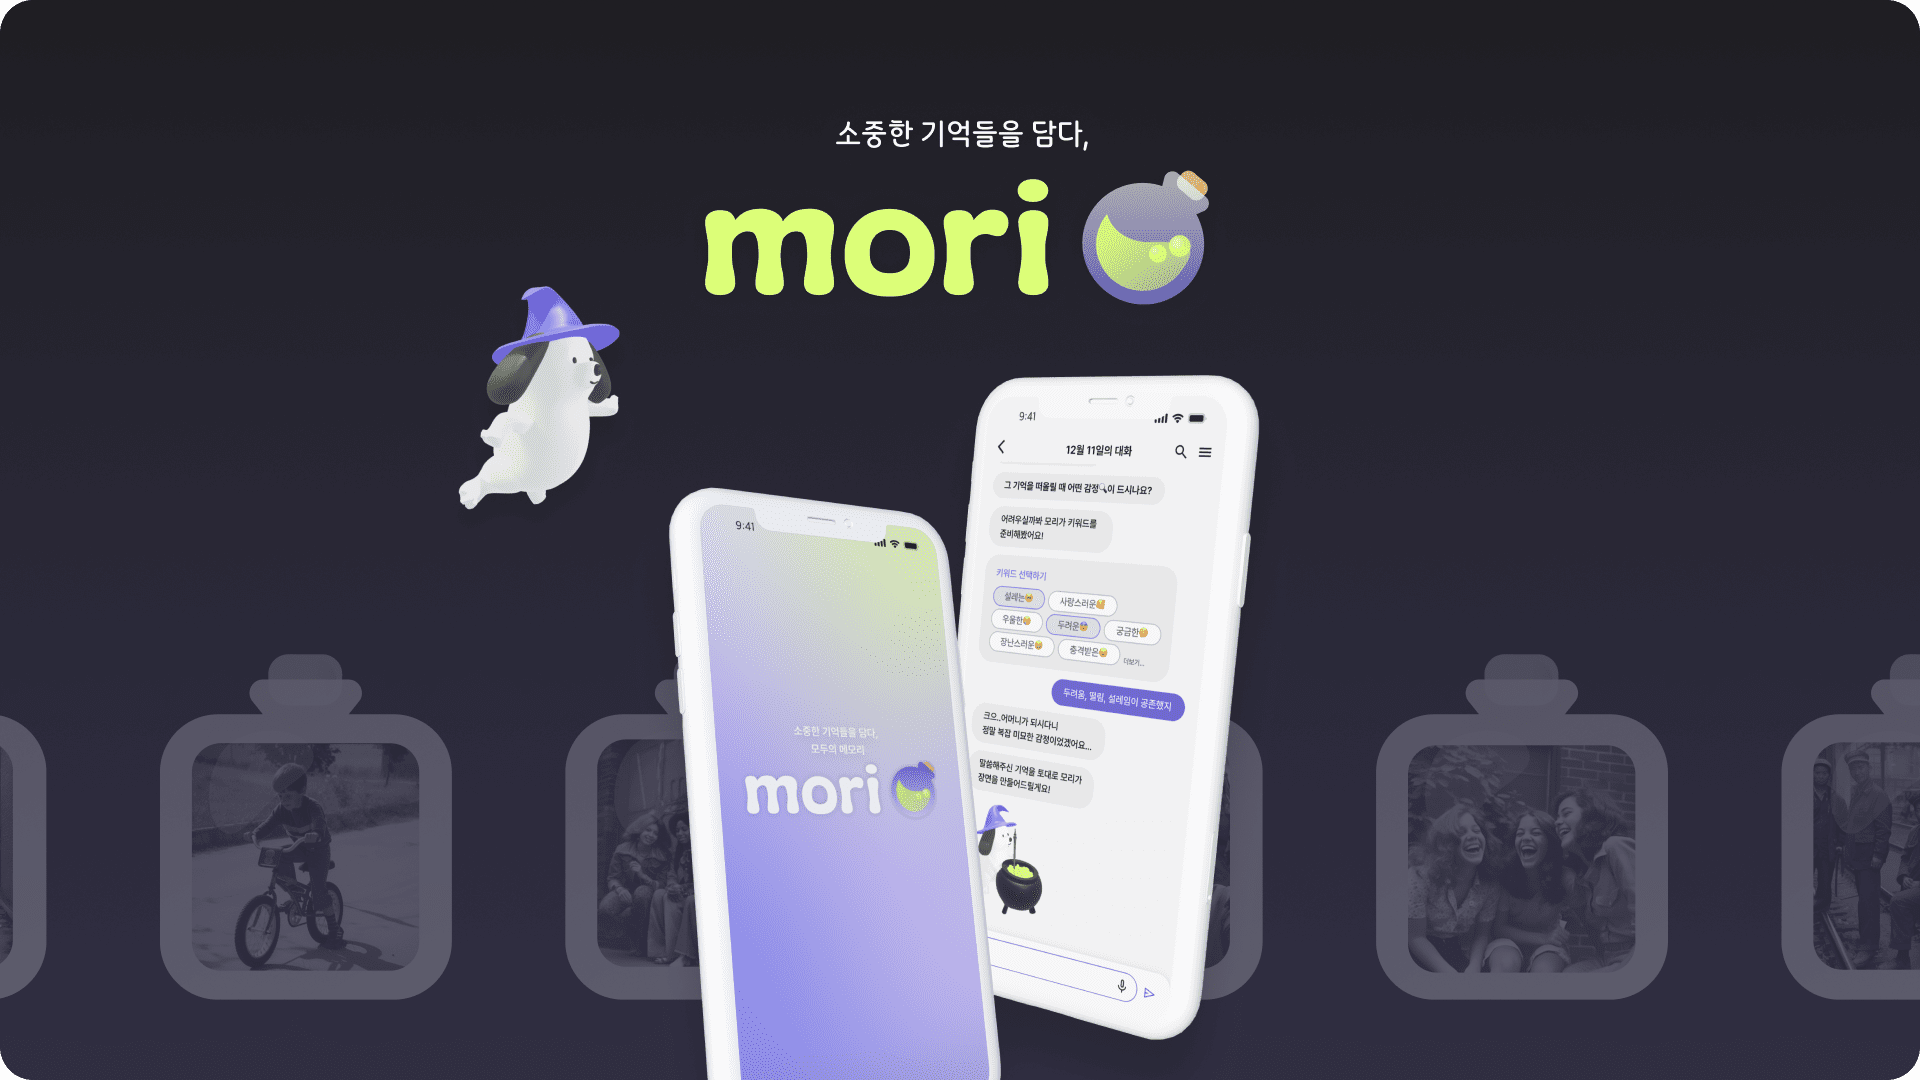 [UX/UI] Mori 모바일 앱